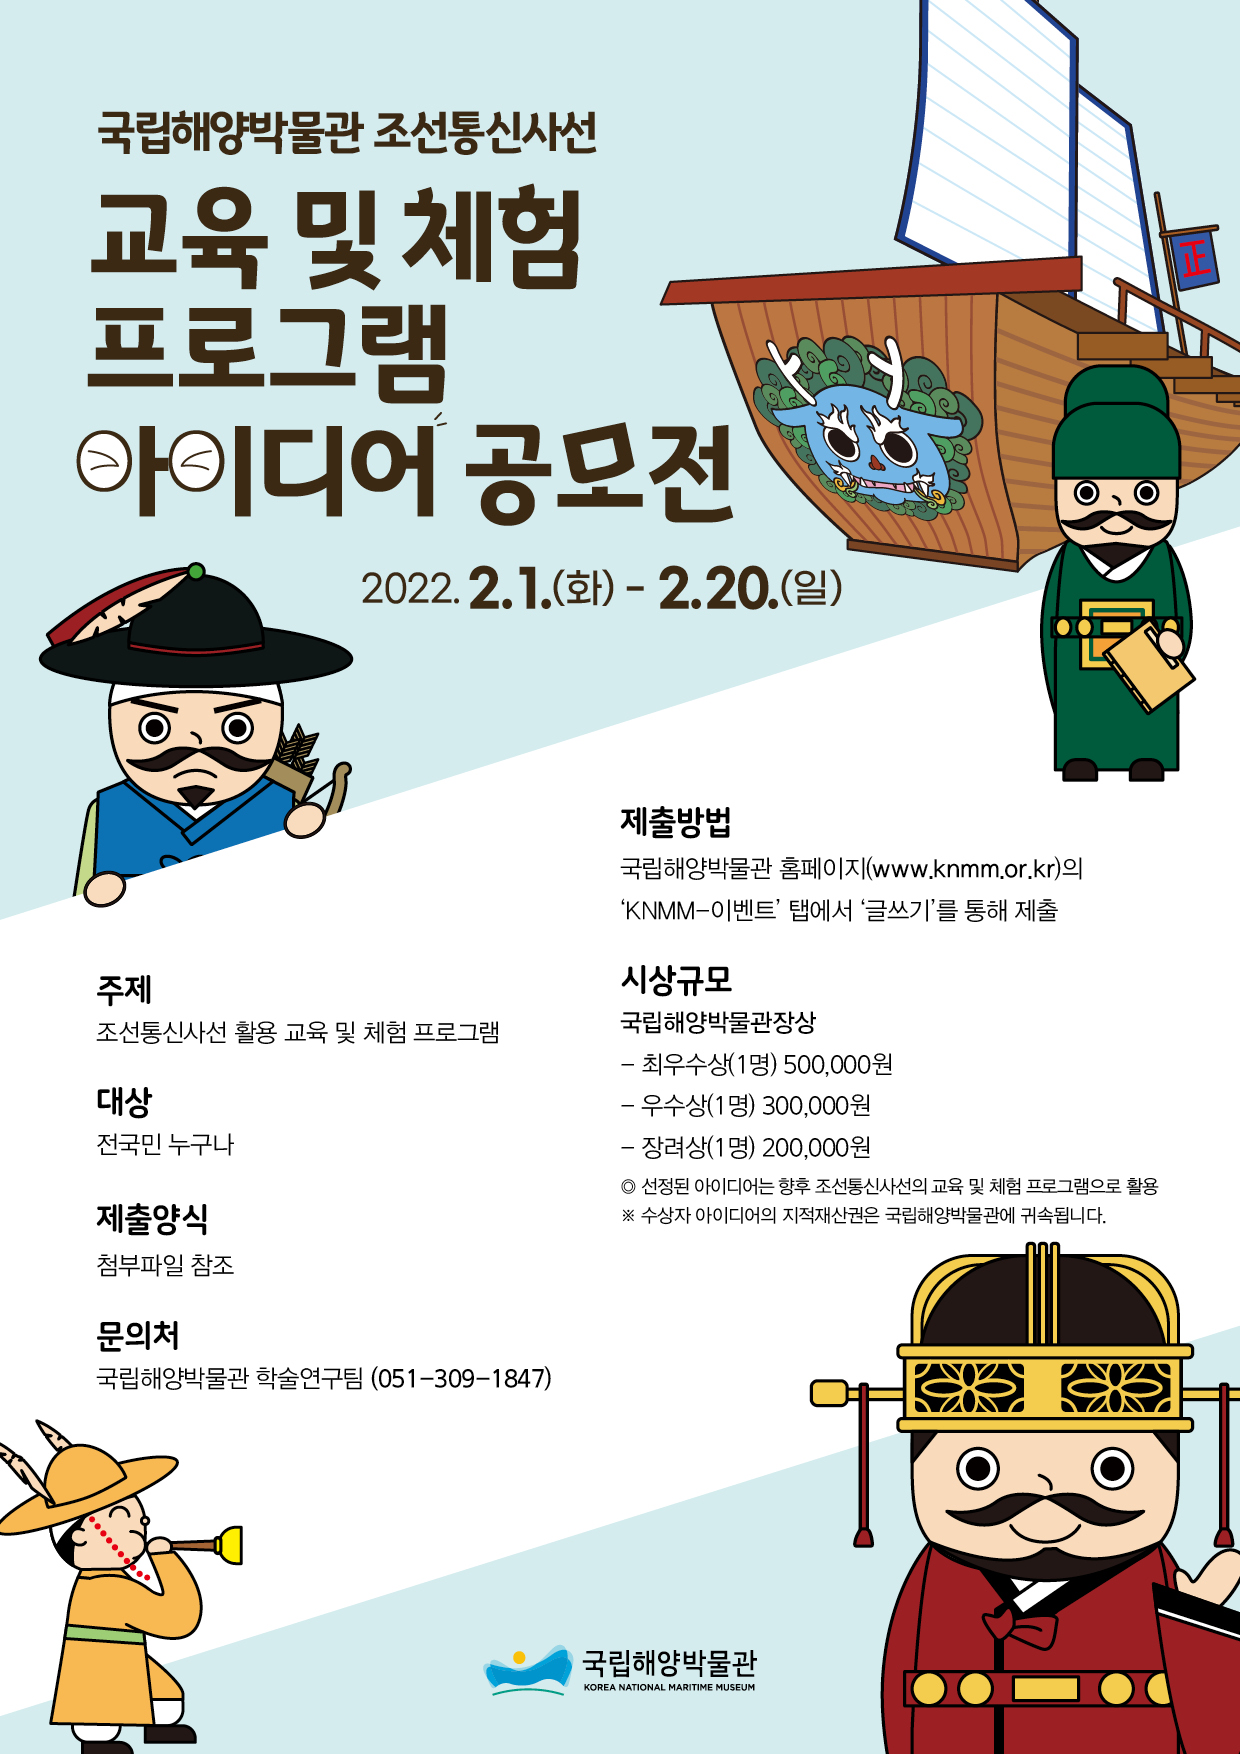 조선통신사선 교육 및 체험프로그램 공모전 개최